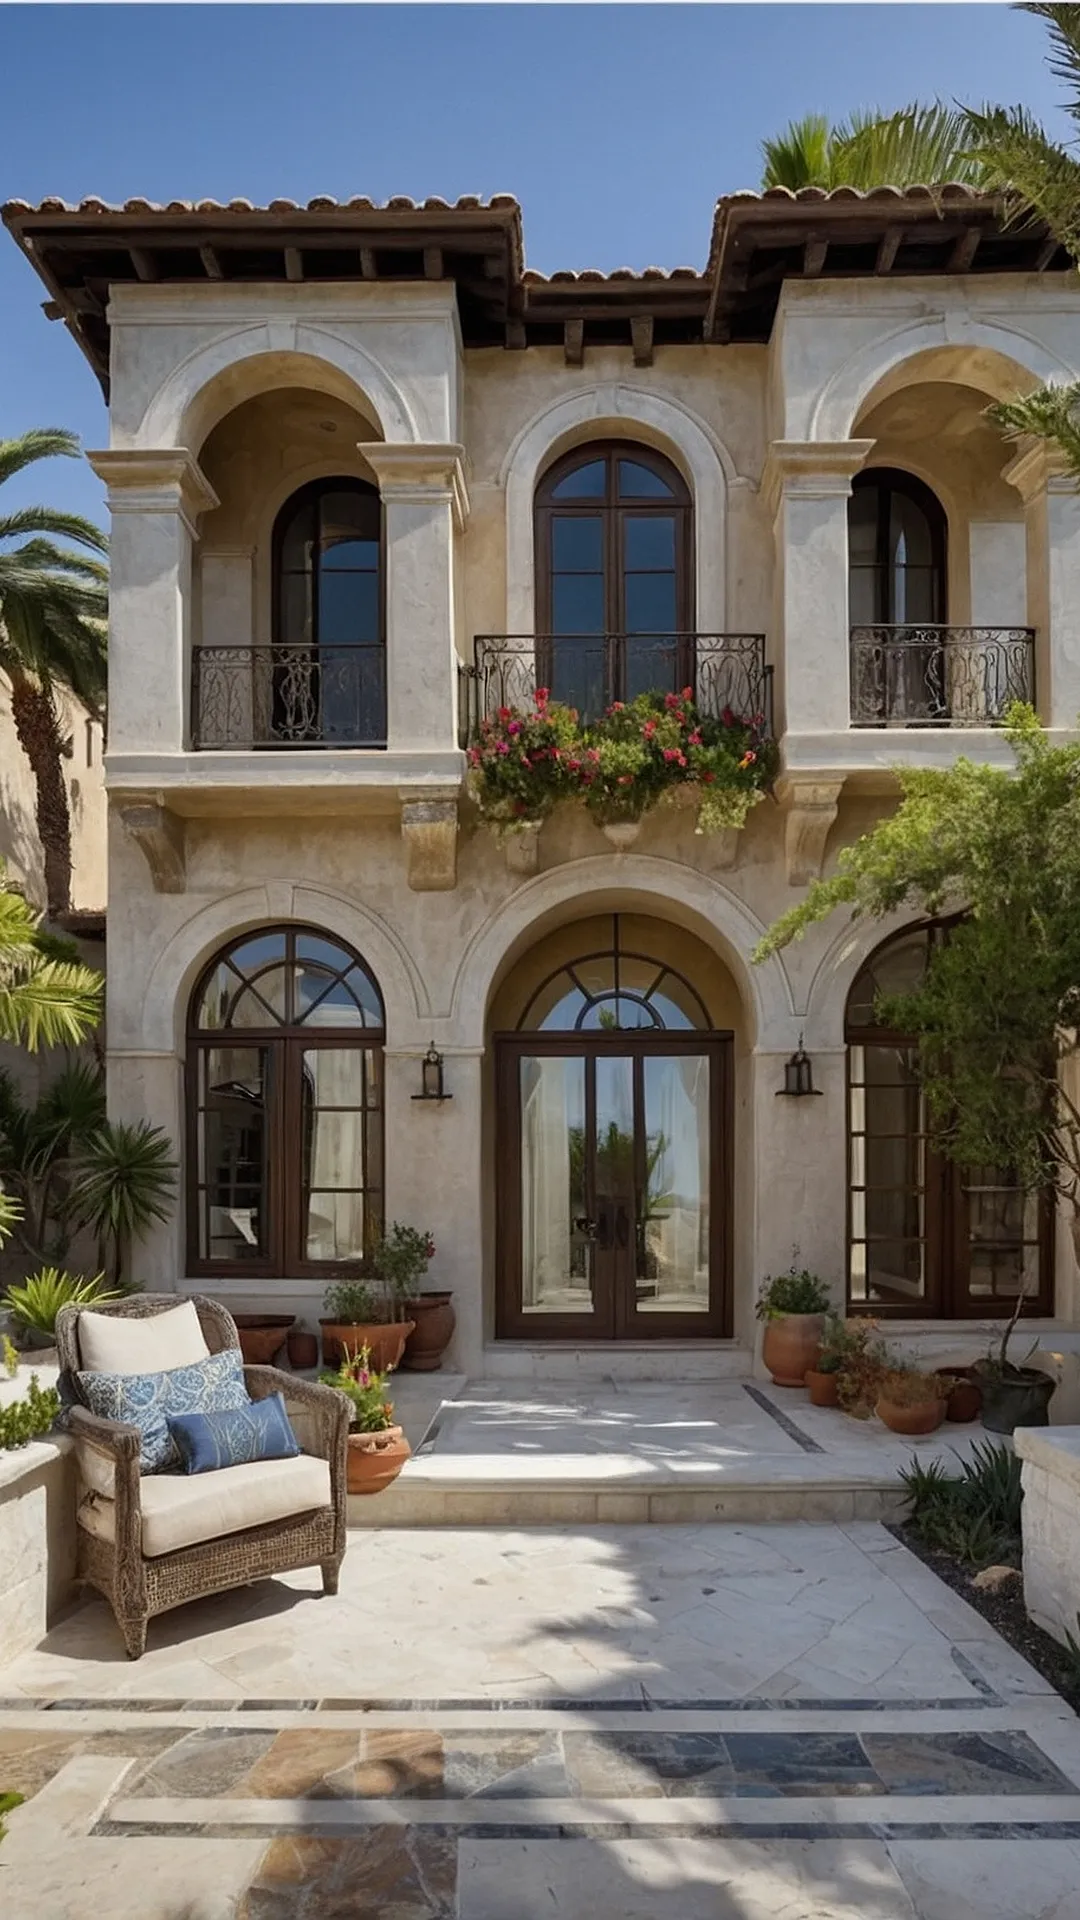 Classic Mediterranean Architecture